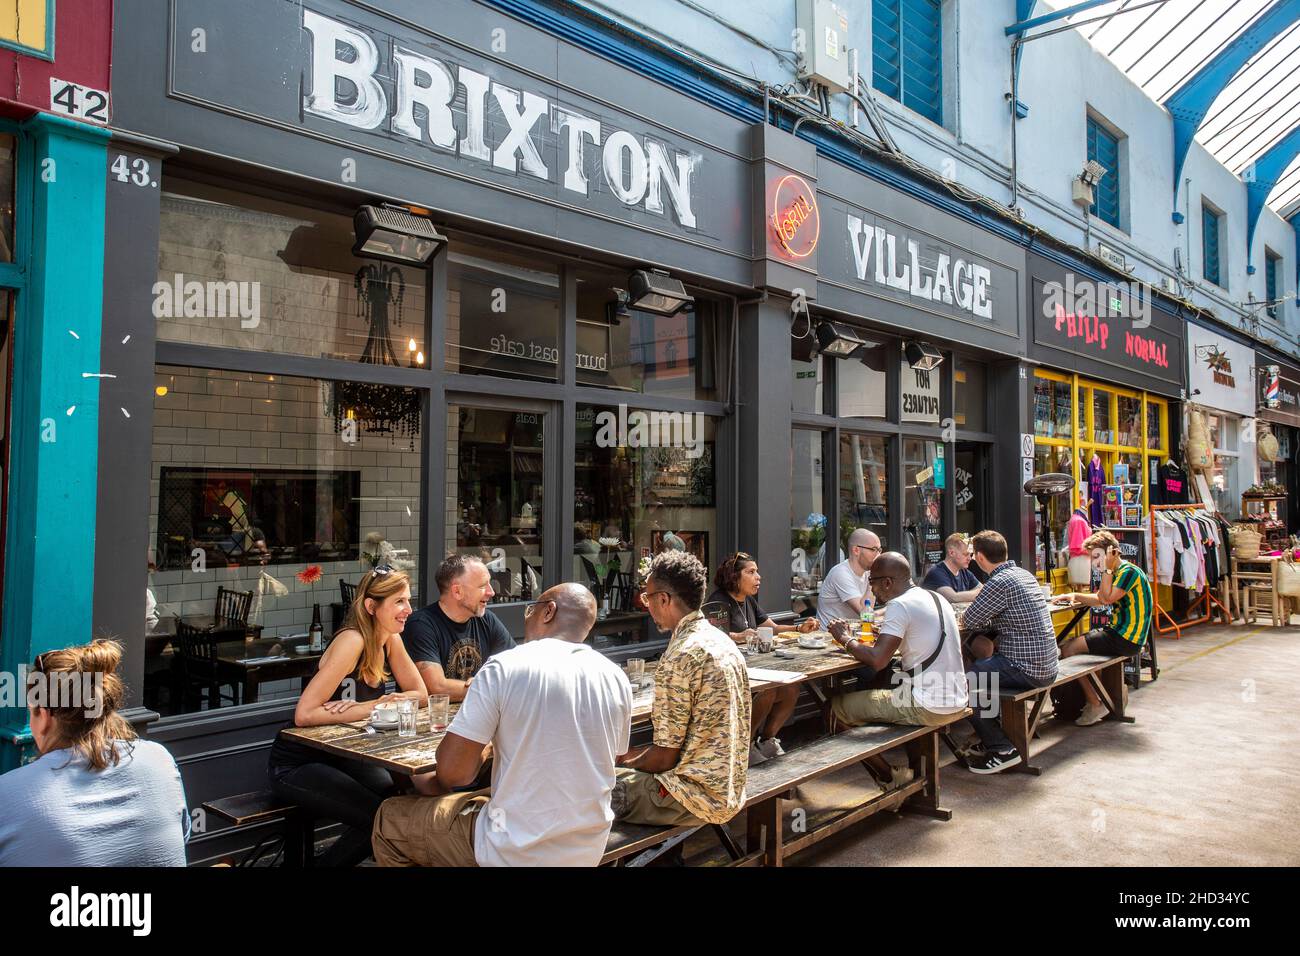 Brixton Village, un marché intérieur populaire d'art, d'artisanat, de bars et de nourriture du monde entier Banque D'Images